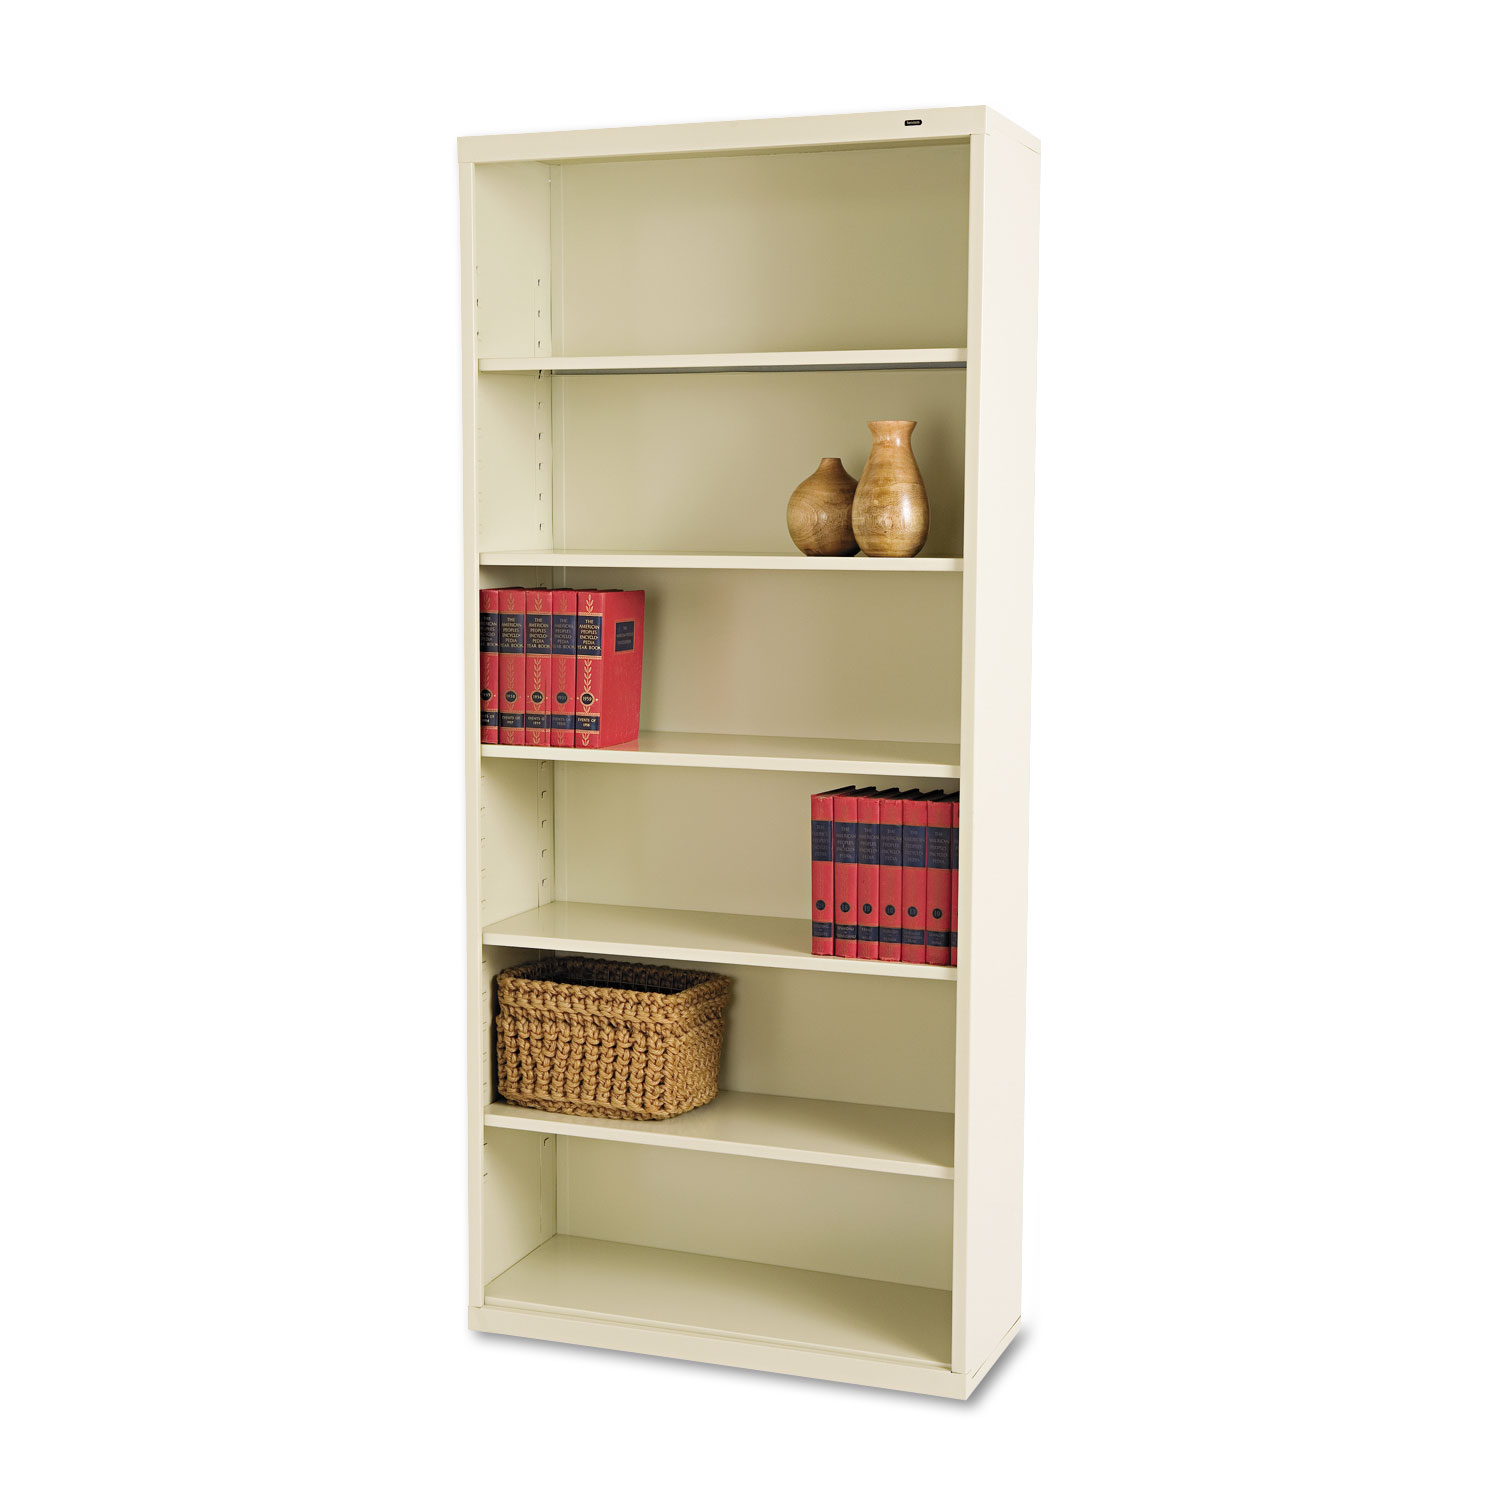  Tennsco B-78PY Metal Bookcase, Six-Shelf, 34-1/2w x 13-1/2h x 78h, Putty (TNNB78PY) 